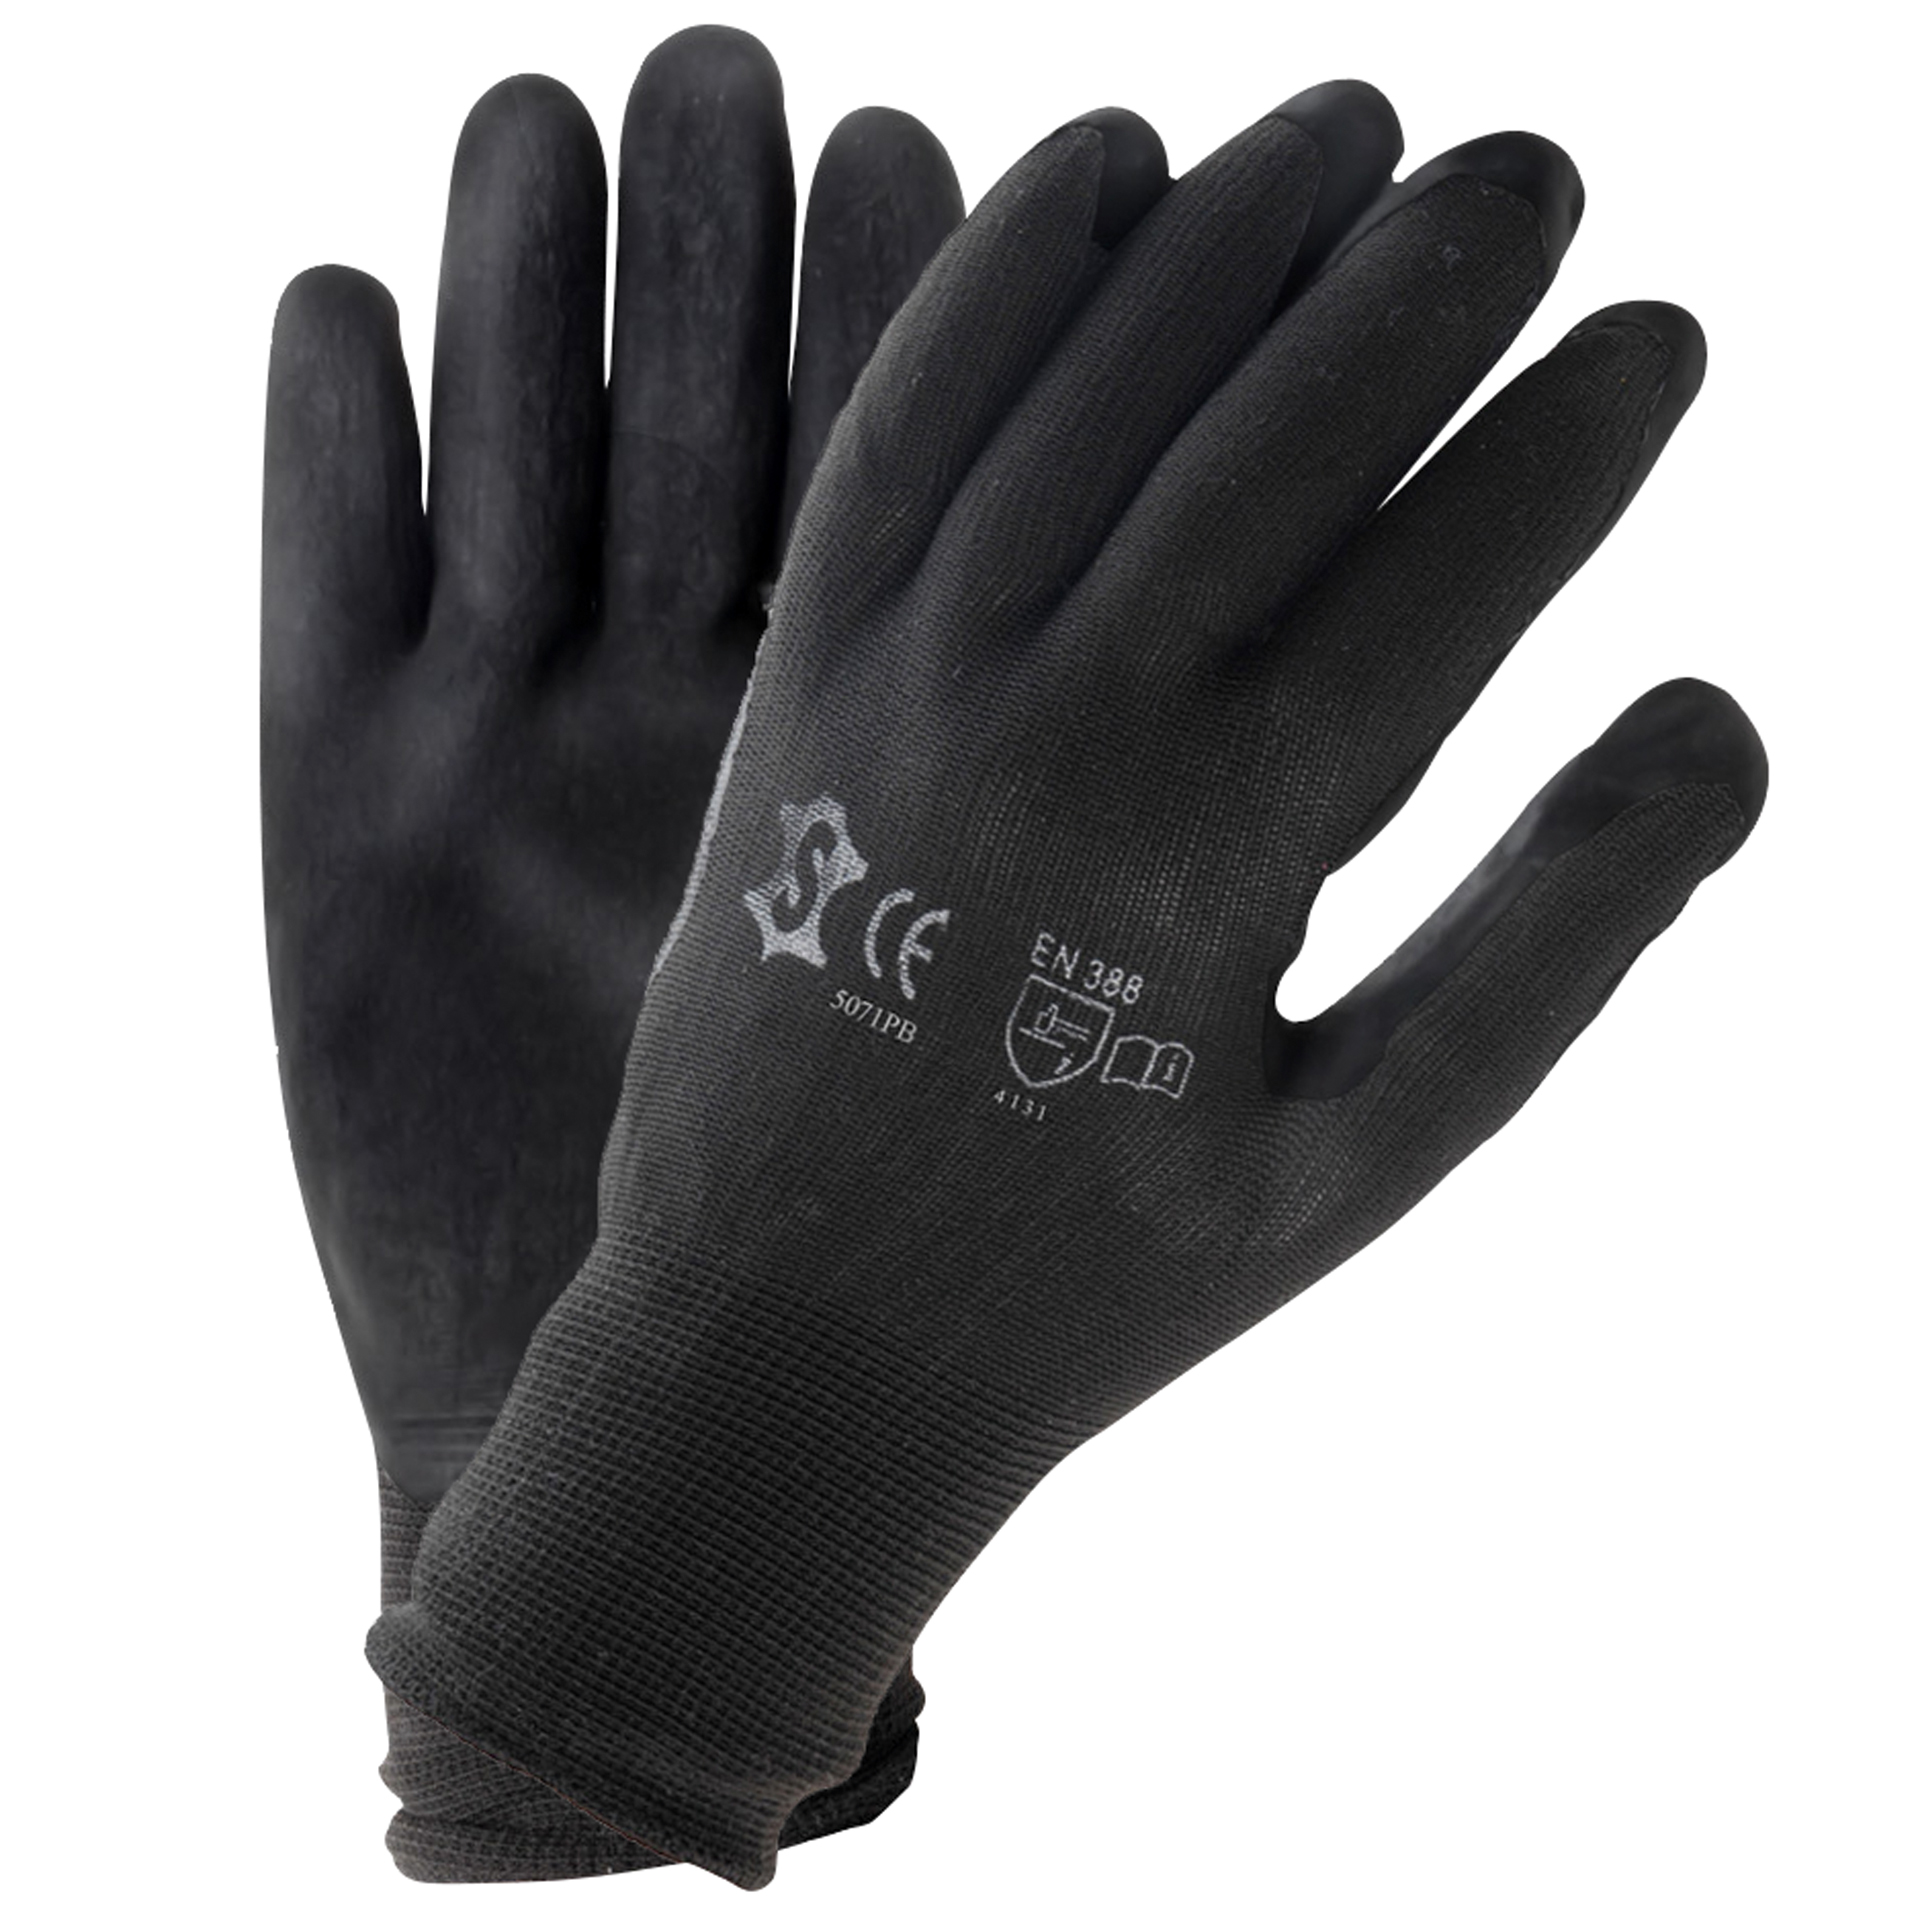 Unbranded Handschoenen PU zwart maat 9 (XL) 6172309